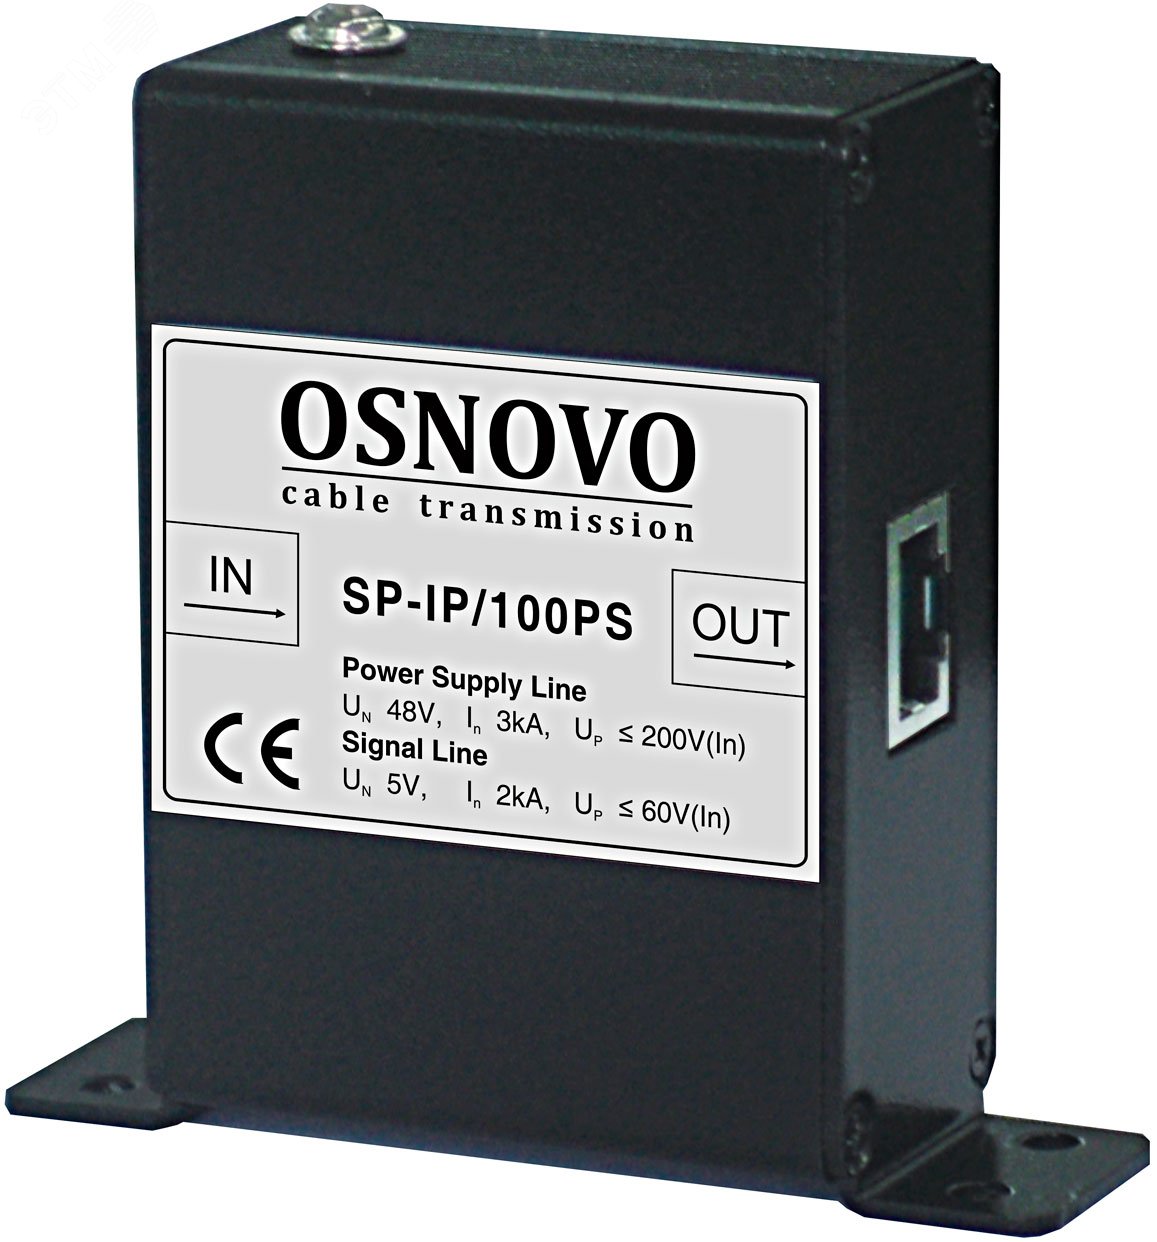 Устройство грозозащиты для локальной вычислительной сети(скорость до 100Мбит/с) с защитой линий PoE, 1 вход, 1 выход SP-IP/100PS OSNOVO - превью